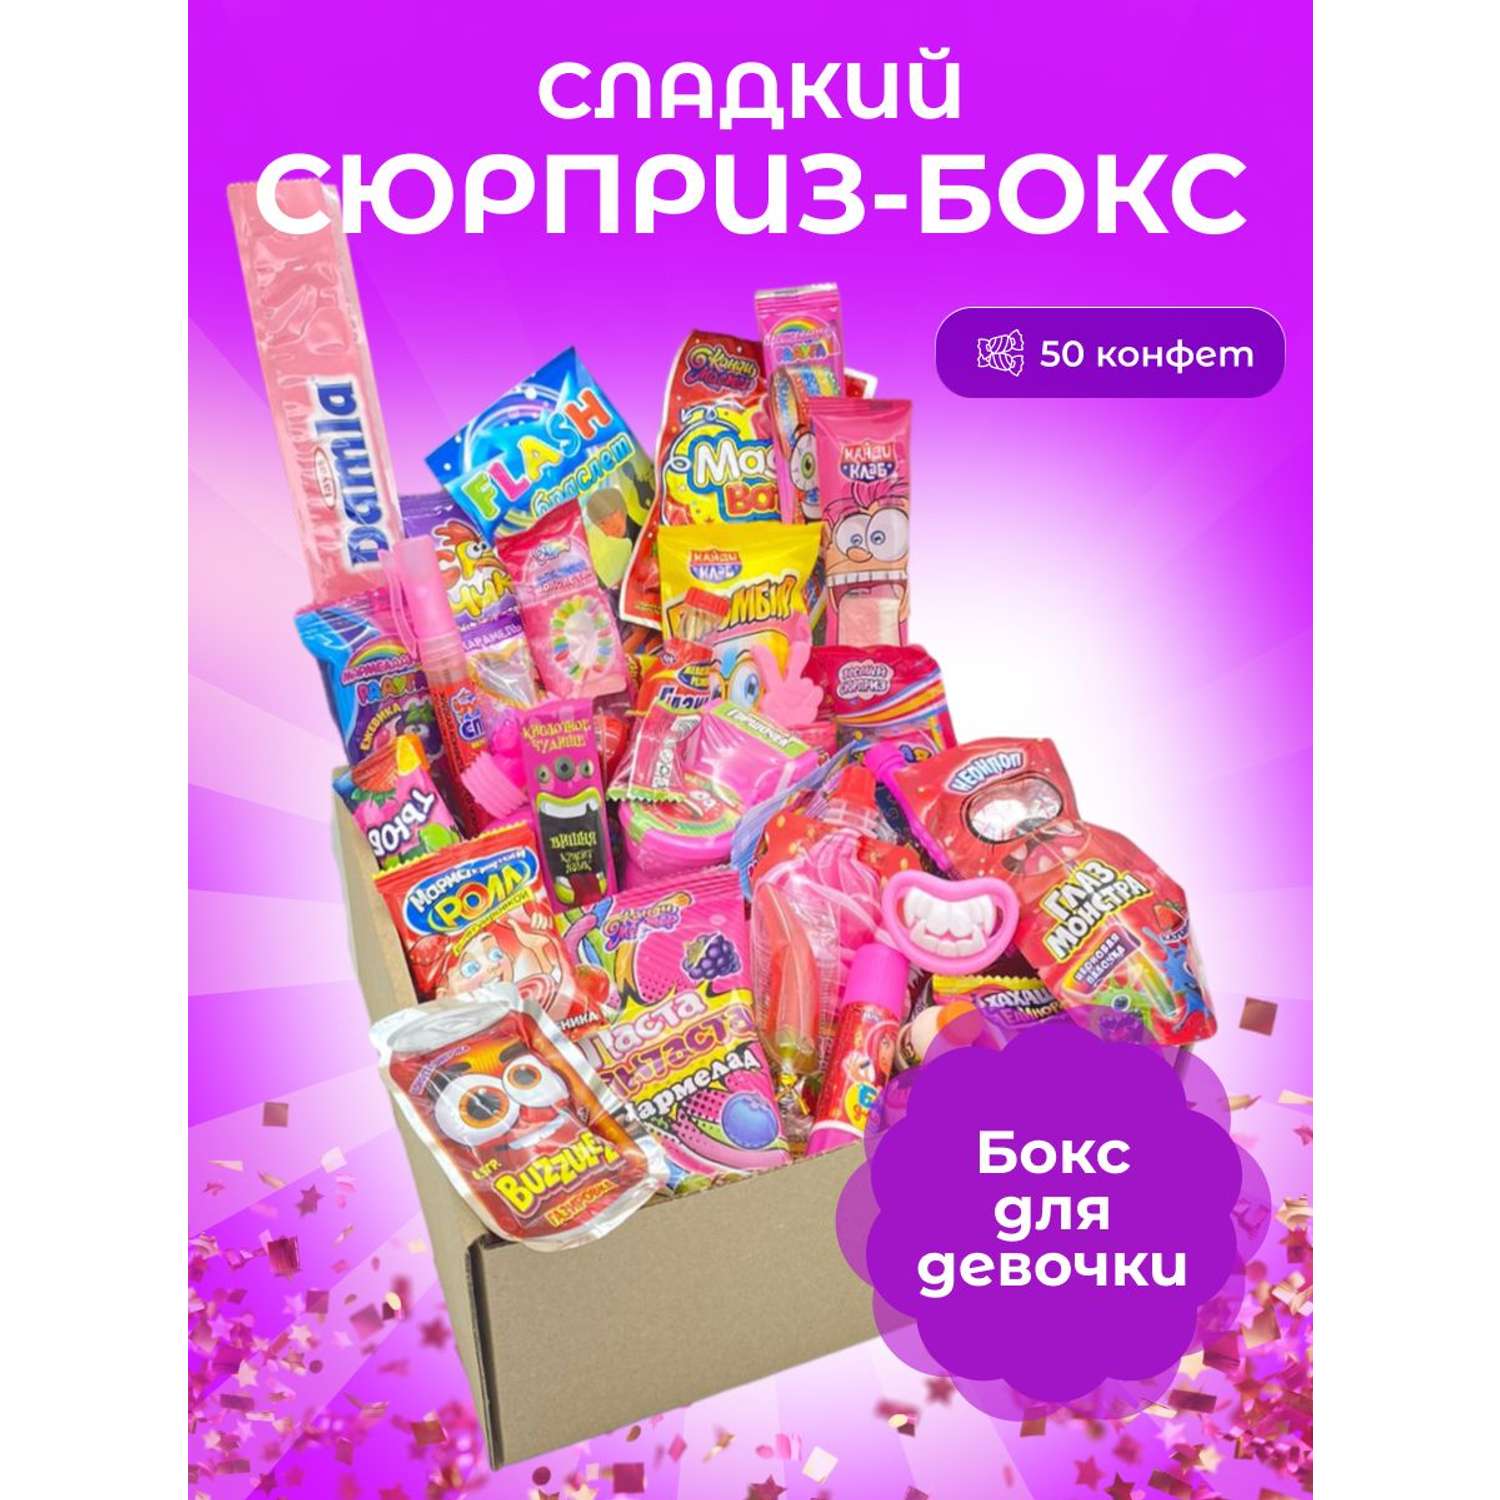 Сладкий бокс для девочки VKUSNODAY 50 конфет - фото 1